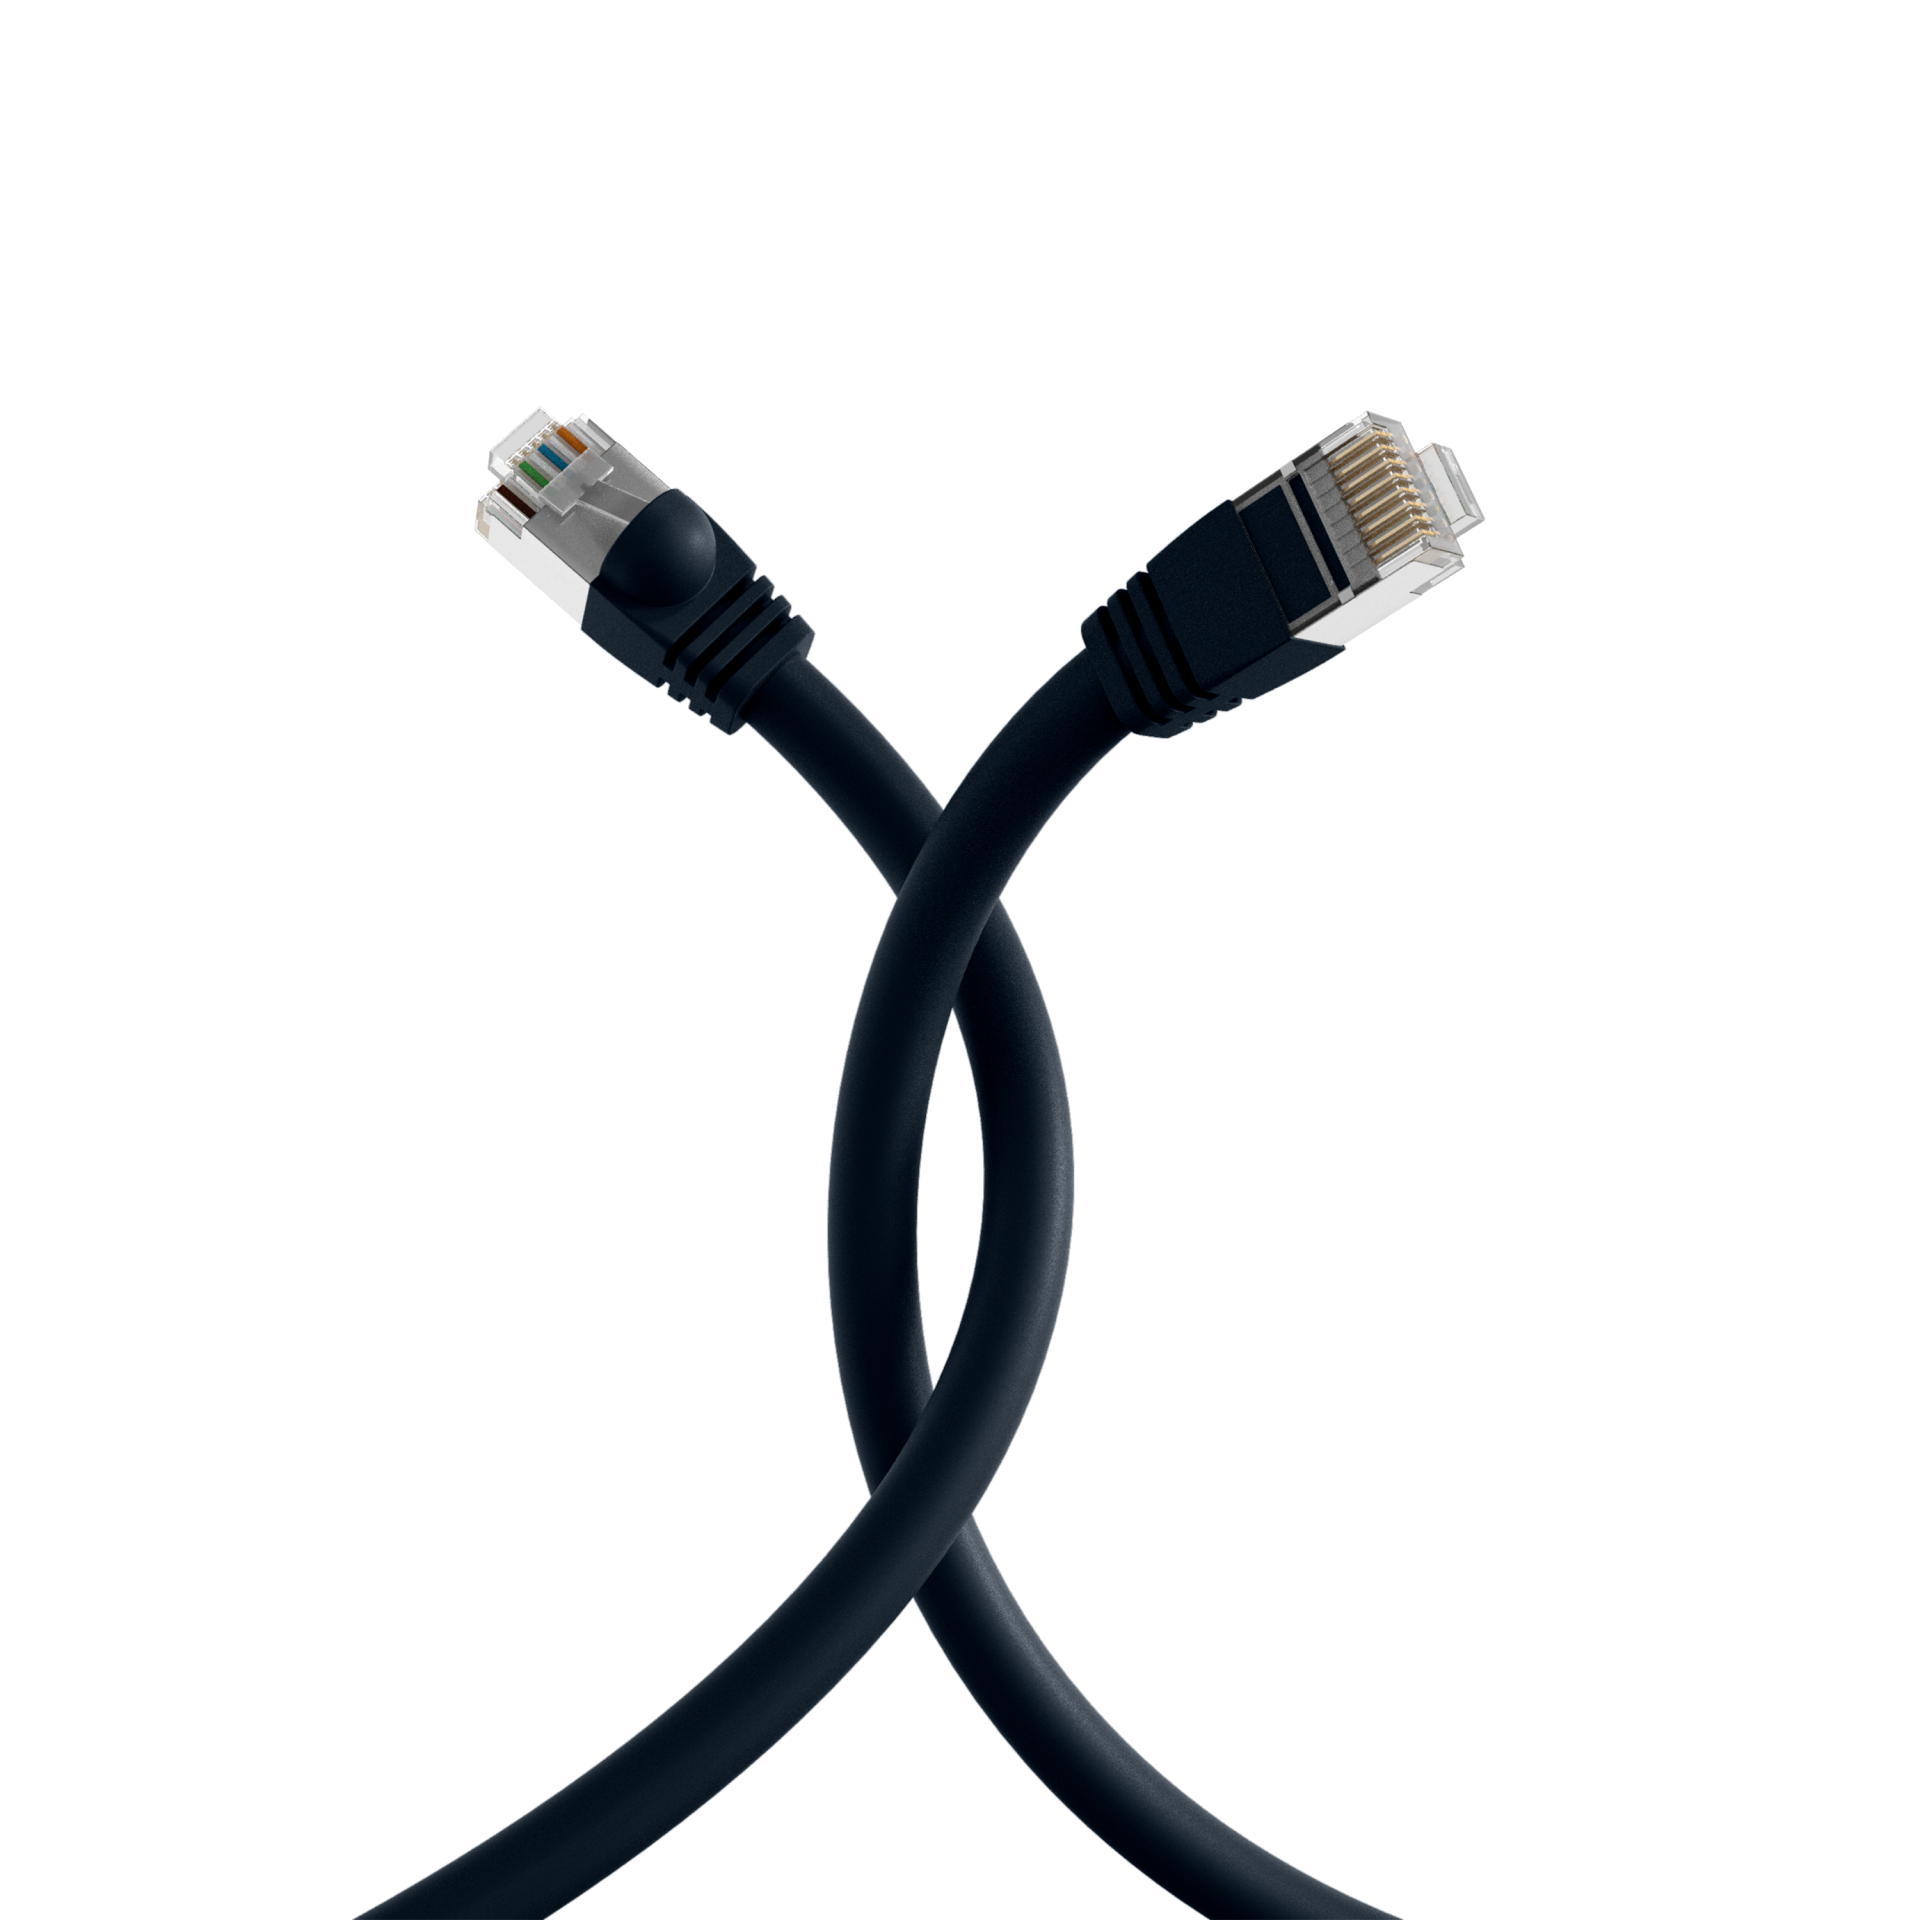 RJ45 Patch cable S/FTP, Cat.6, PVC, short boot, UL, 6m, black